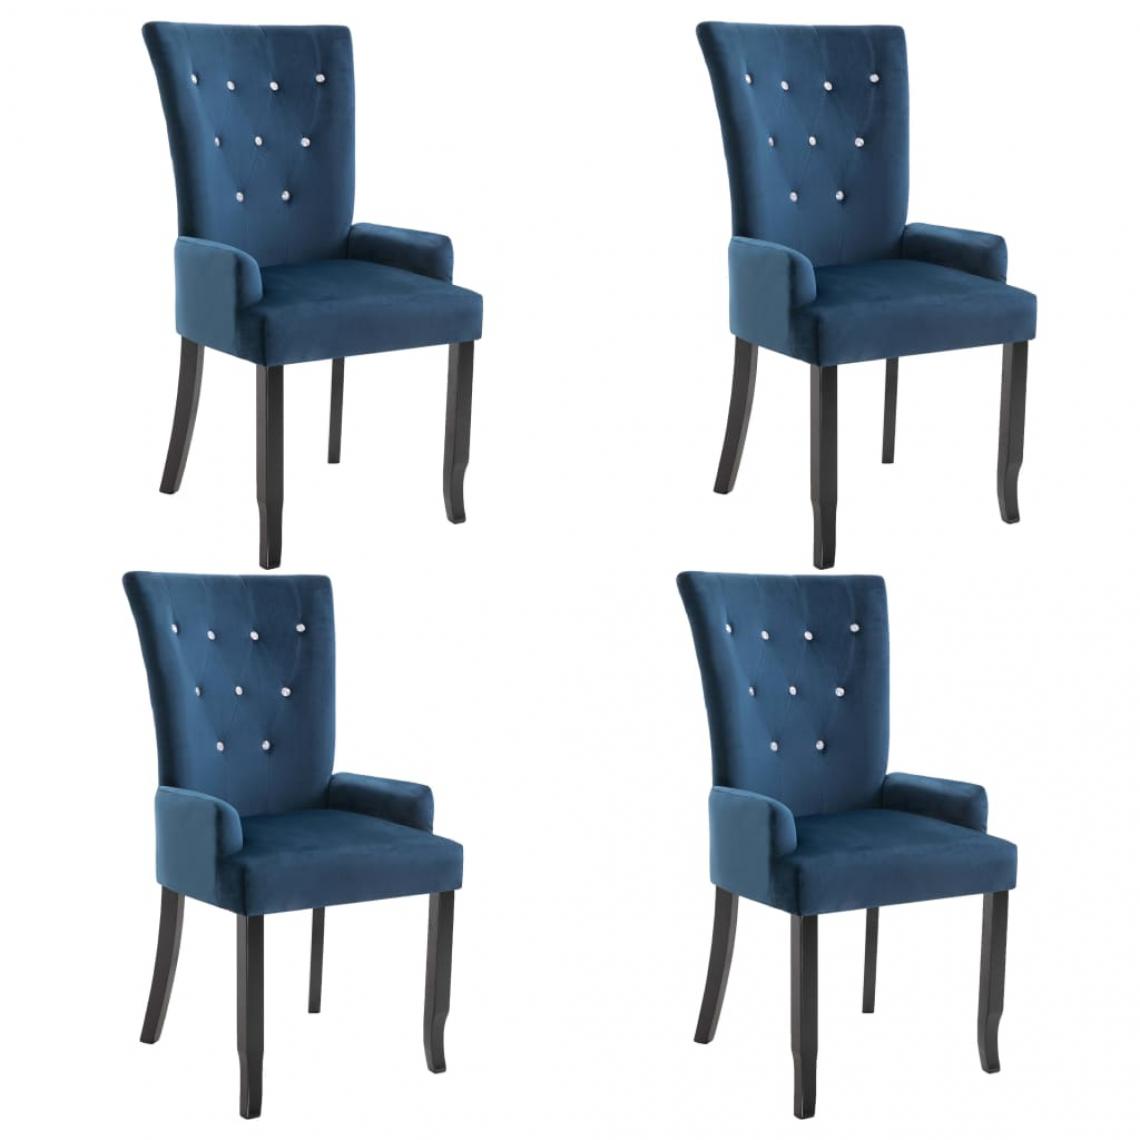 Decoshop26 - Lot de 4 chaises de salle à manger cuisine design classique velours bleu foncé CDS021270 - Chaises